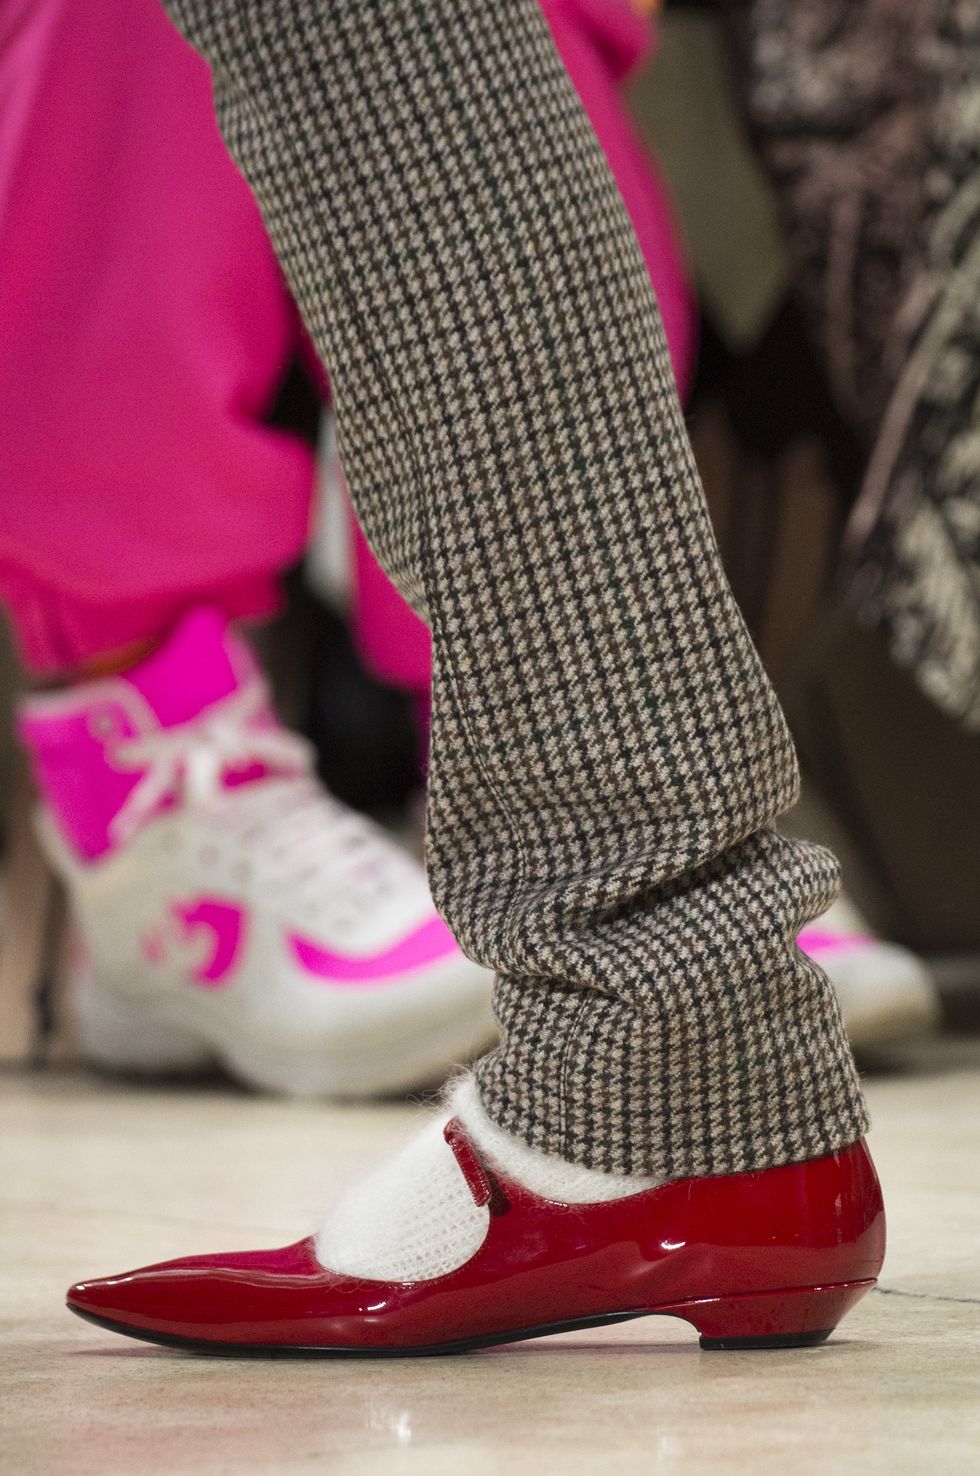 Footwear, Pink, Shoe, White, Red, Magenta, Leg, Fashion, Joint, Human leg, 